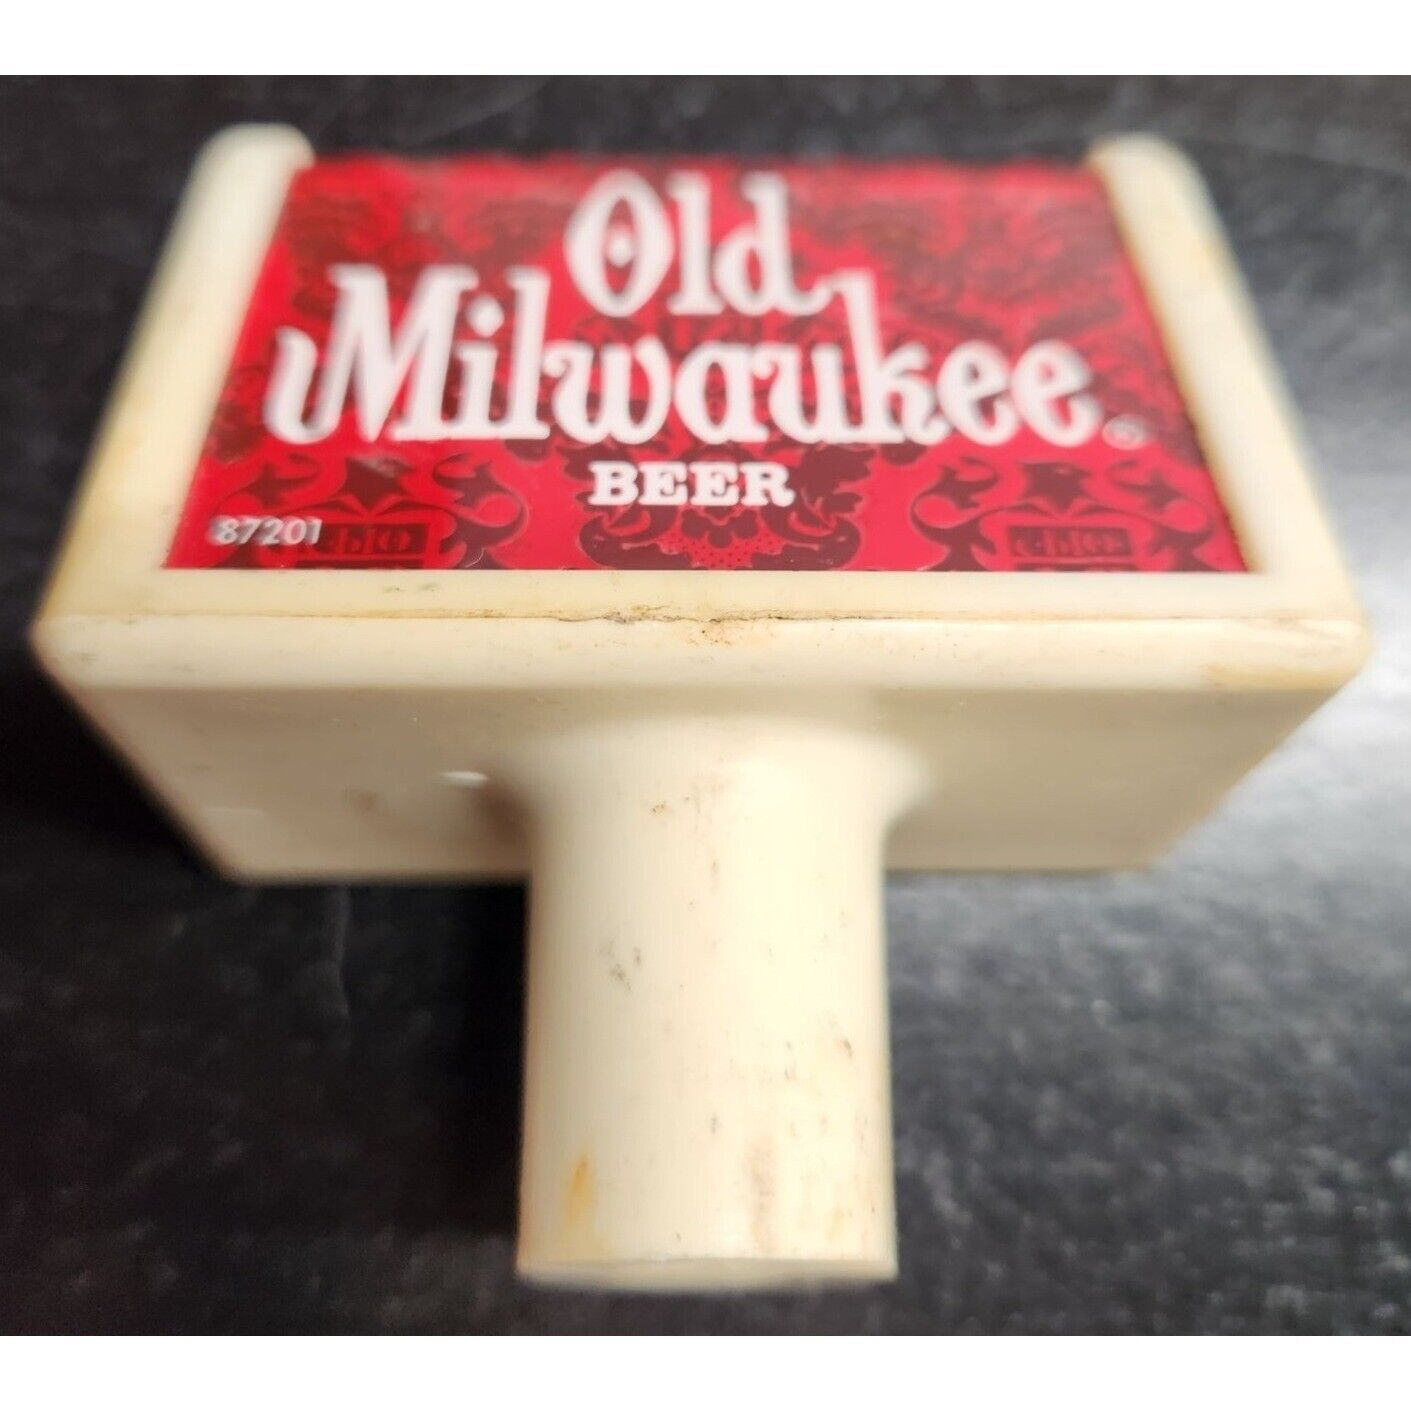 Vintage Old Milwaukee Beer Tap Handle 87201